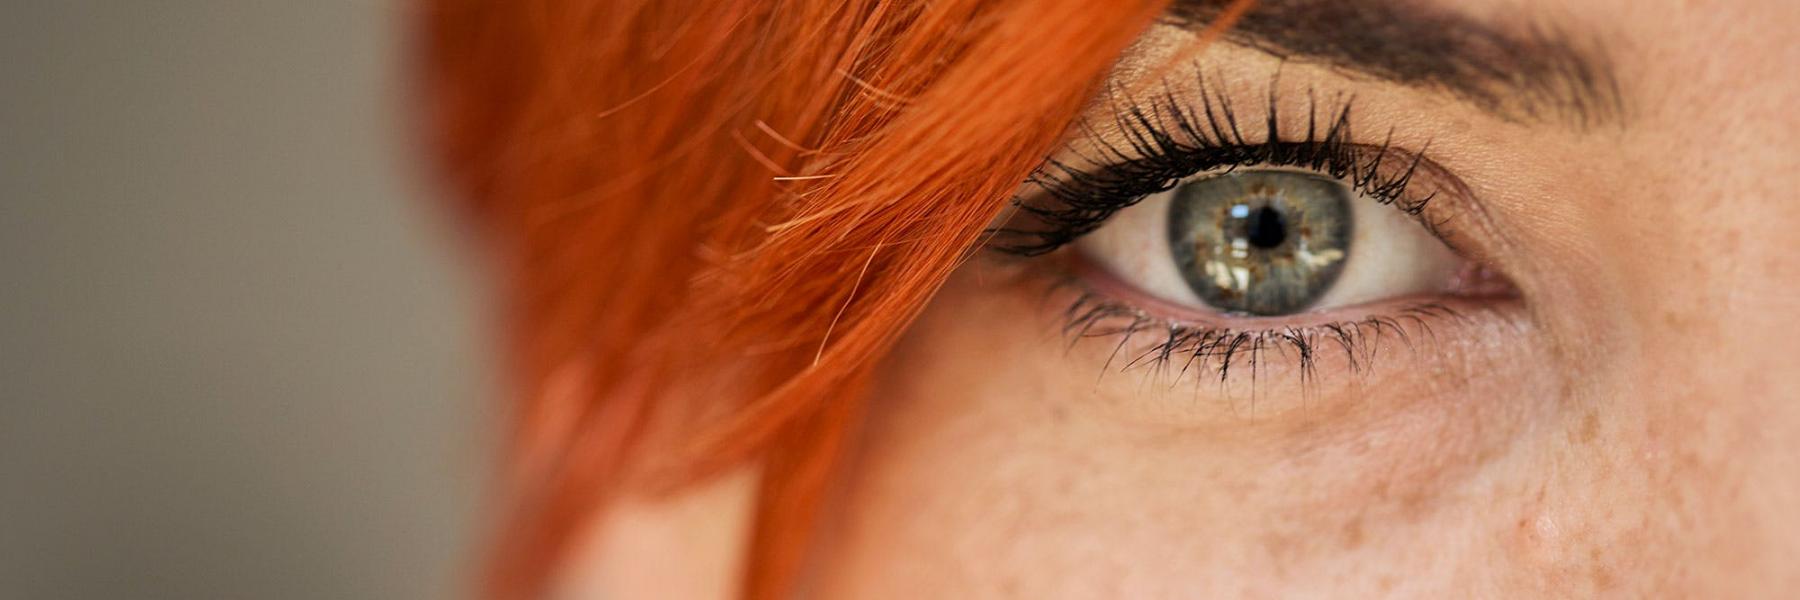 5 تمارين تساعدك على استرخاء العين وتحسين الروية (صور)